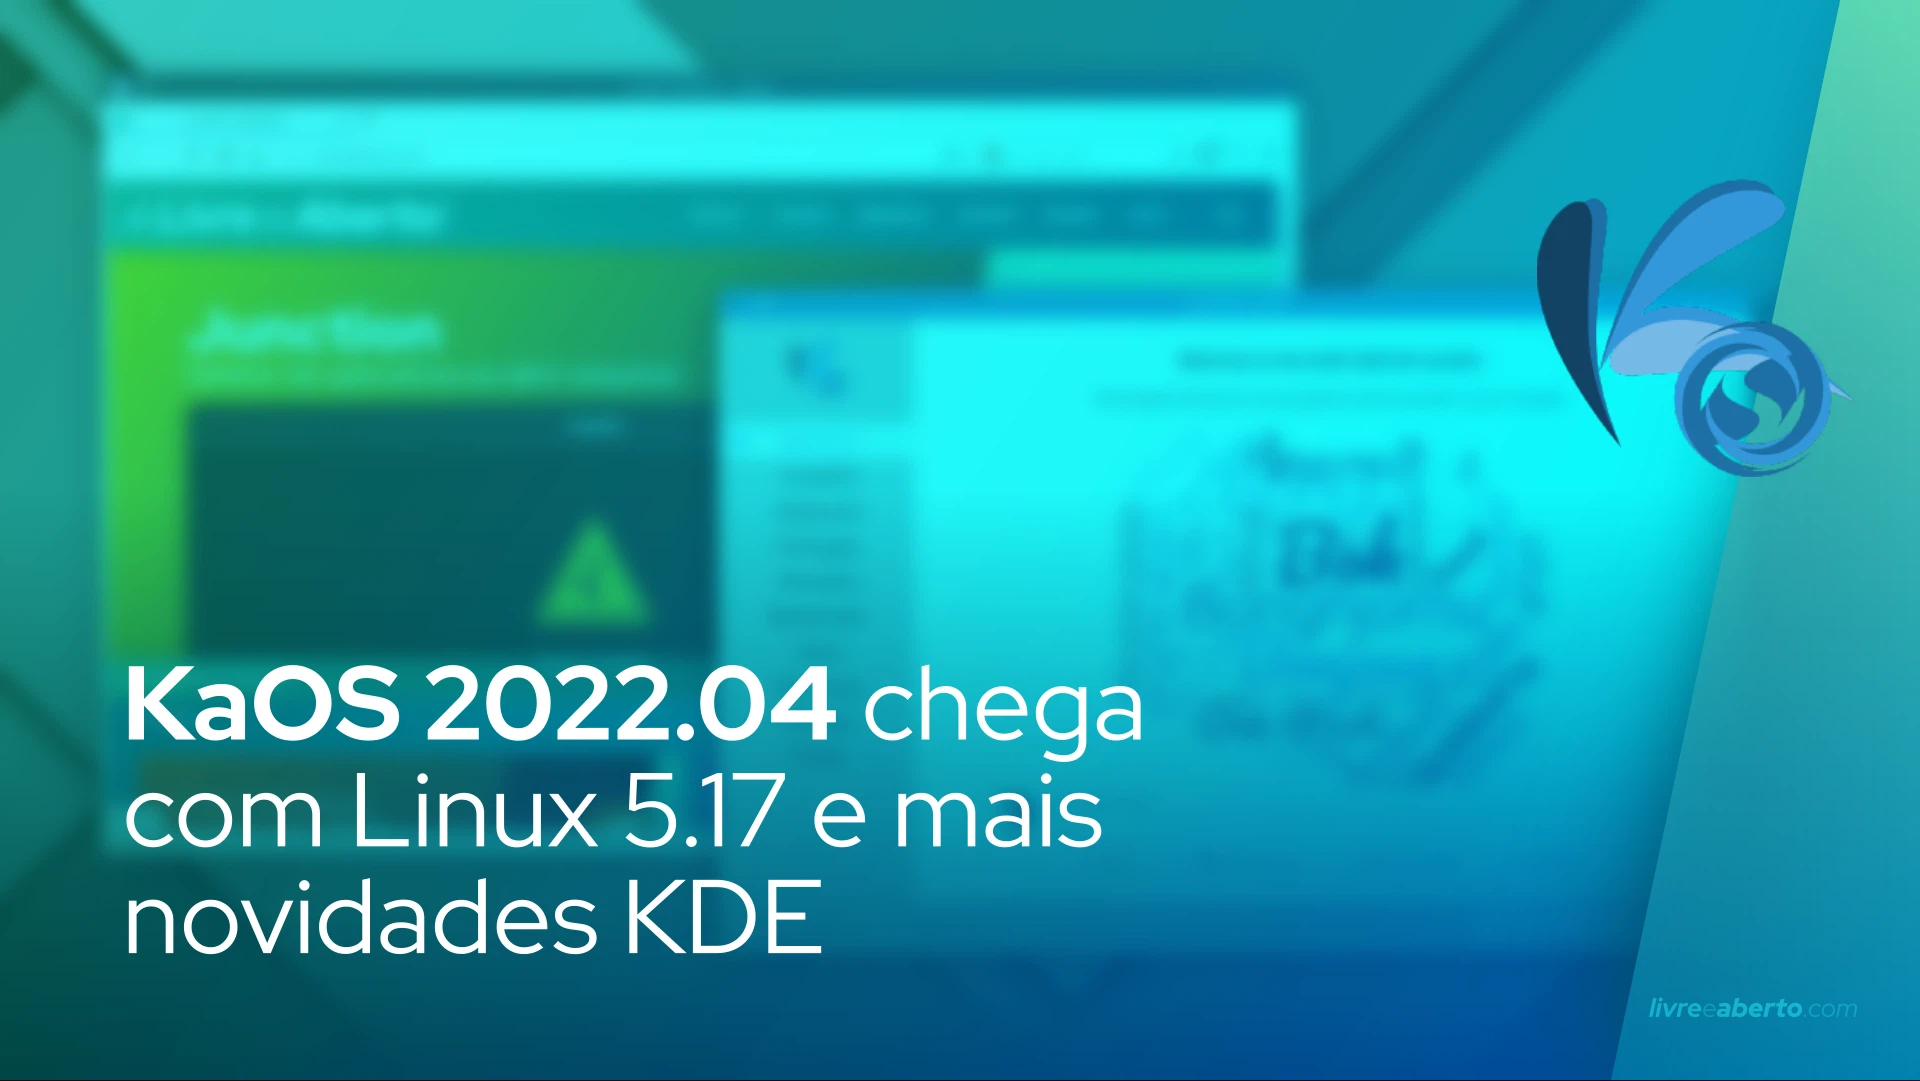 KaOS 2022.04, distro baseada no Arch, chega com Linux 5.17 e mais novidades KDE